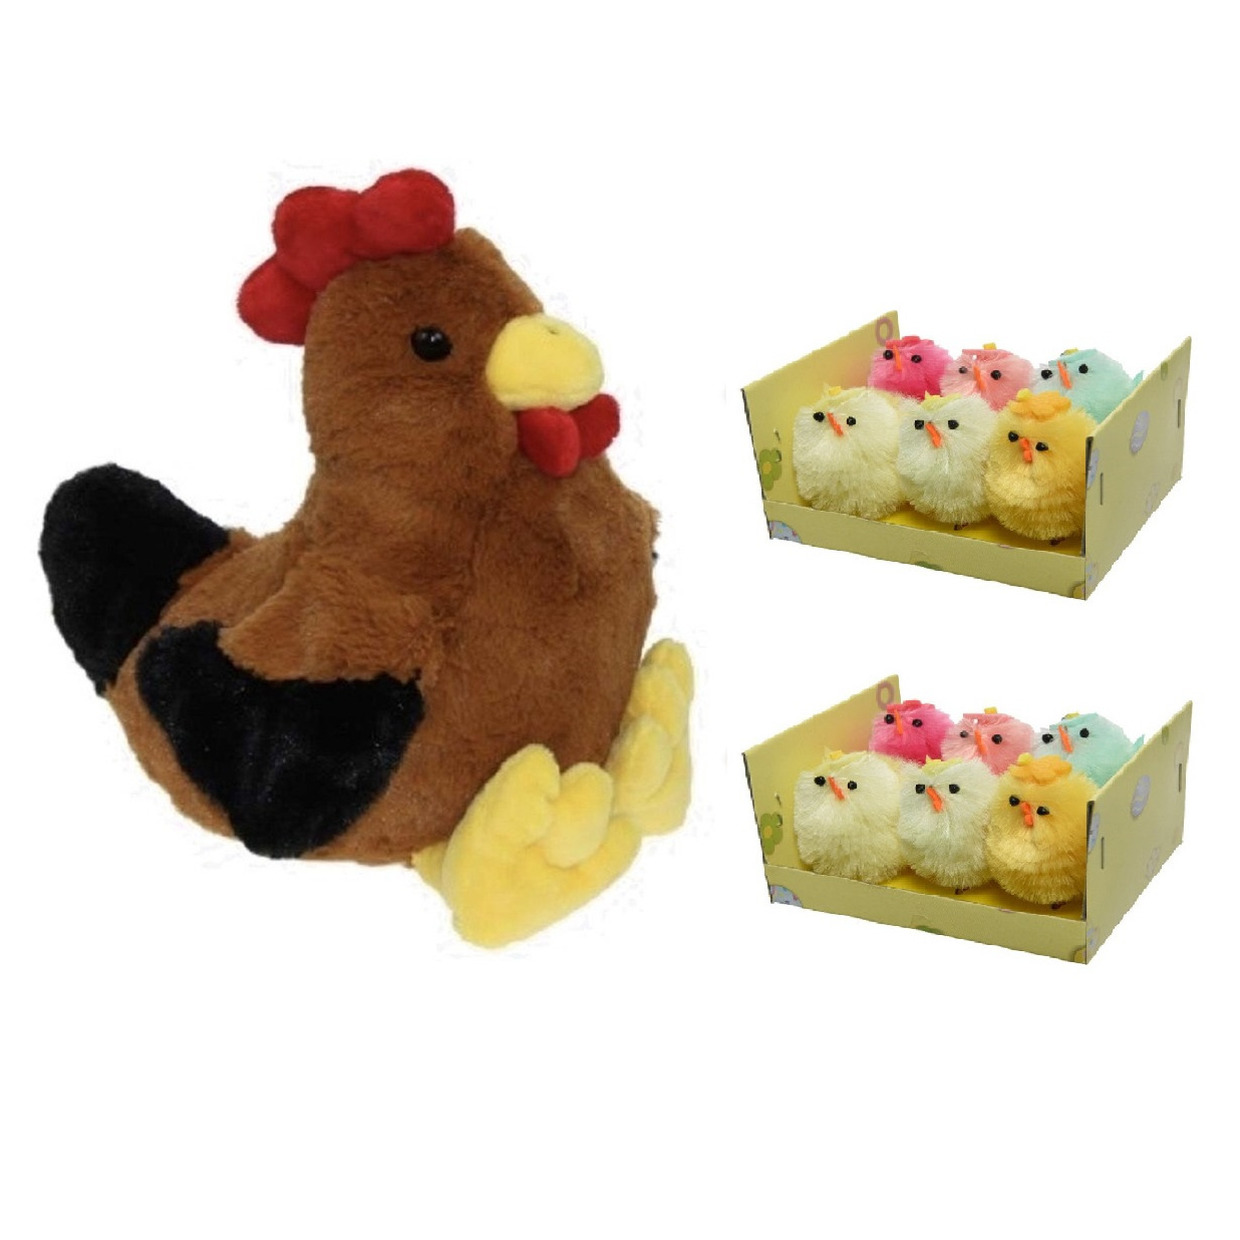 Pluche bruine kippen-hanen knuffel van 25 cm met 12x stuks mini gekleurde kuikentjes 4 cm